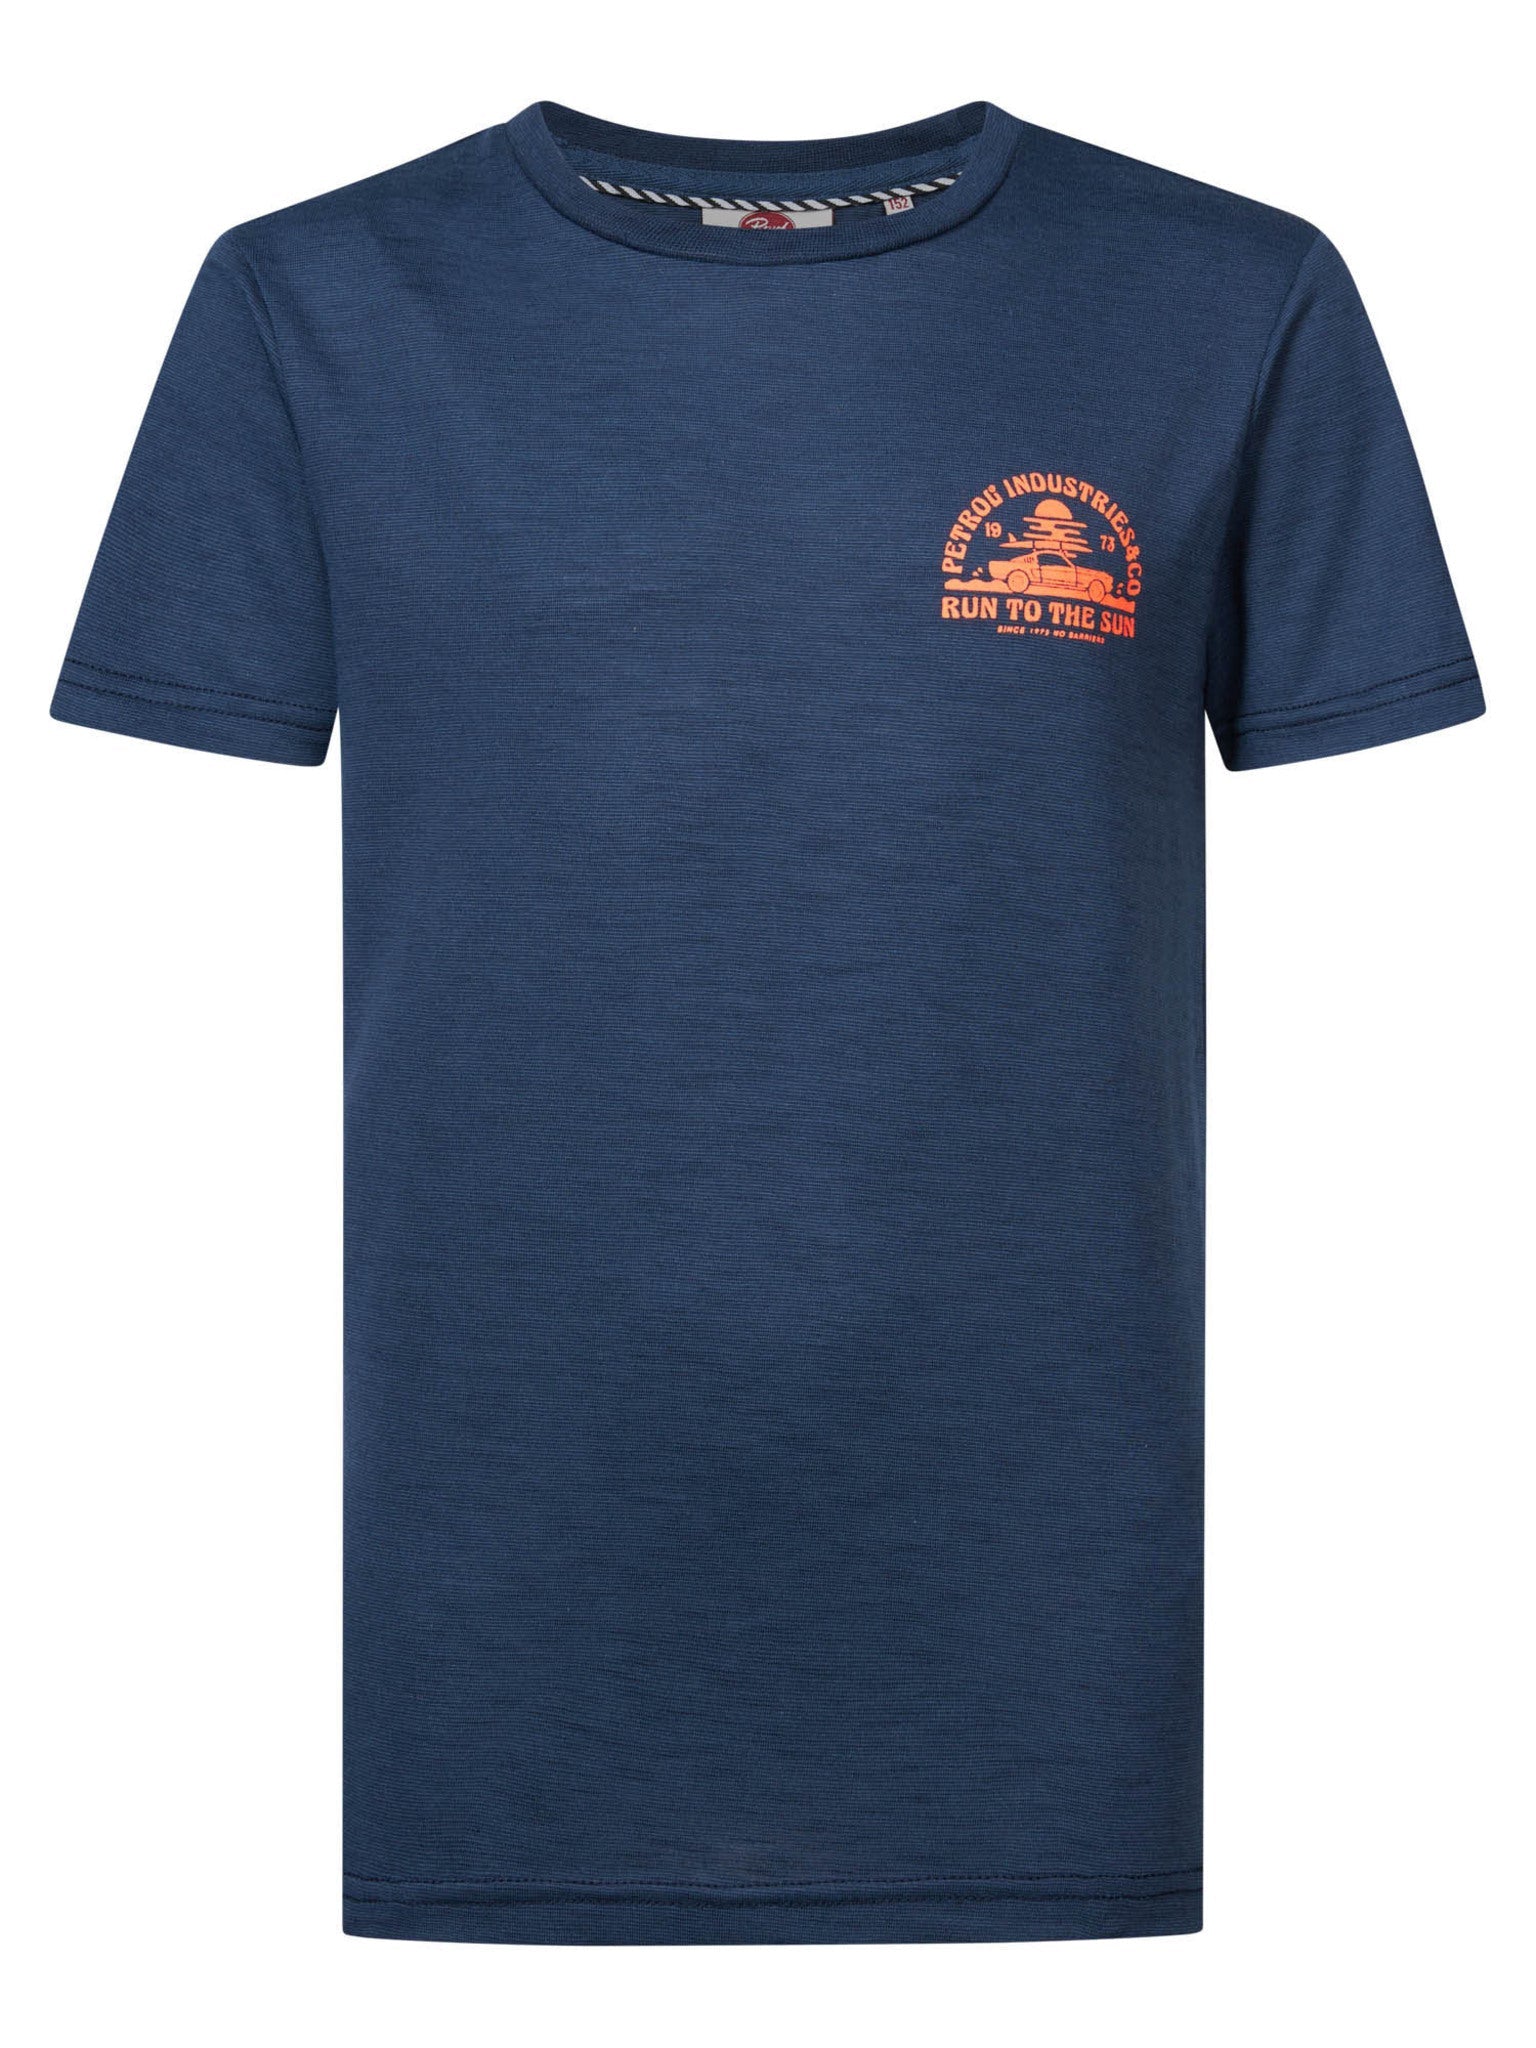 Jongens T-Shirt SS van Petrol in de kleur Stone Blue in maat 176.